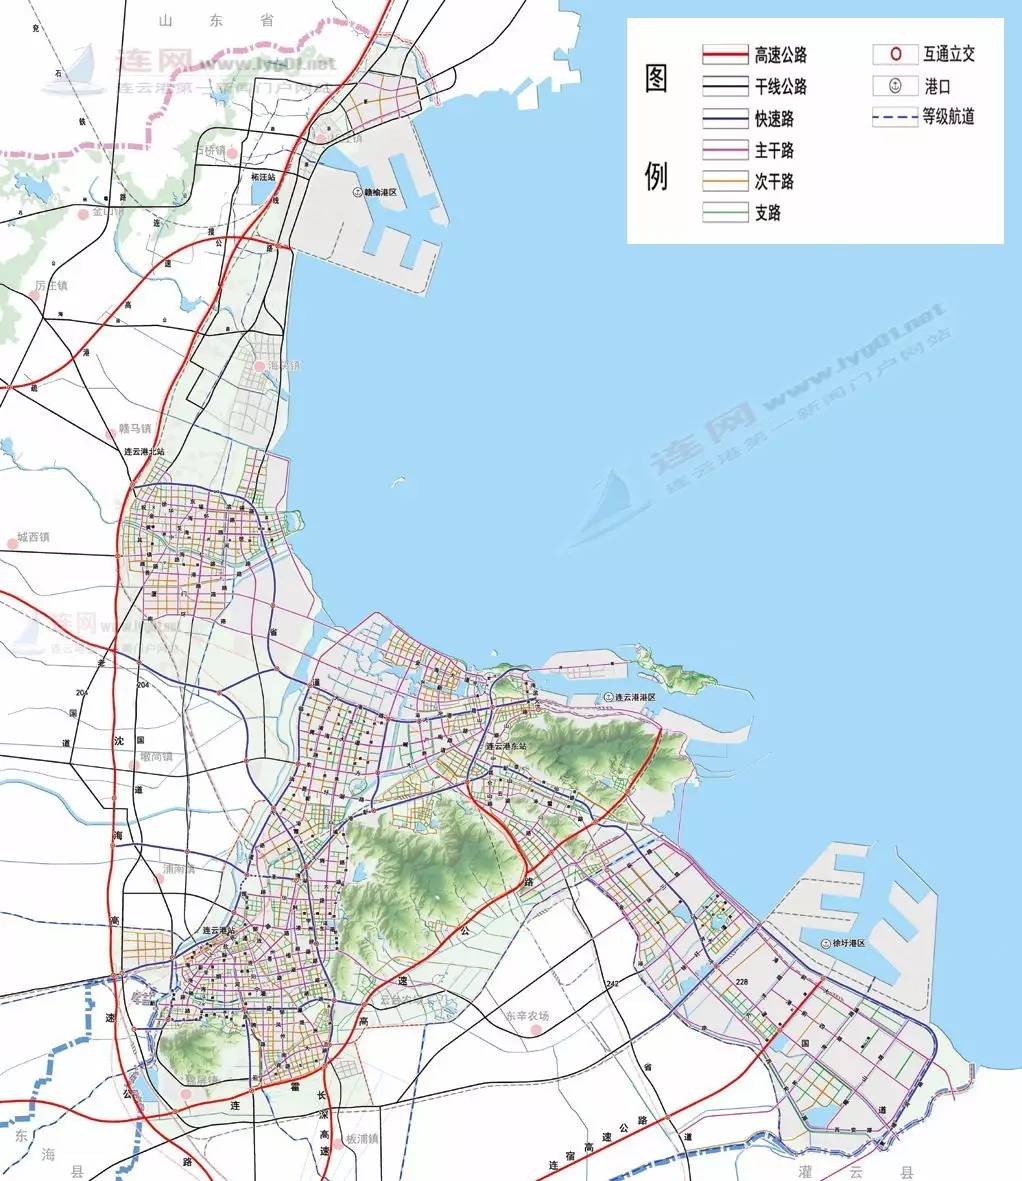 连云港轨道交通规划图片